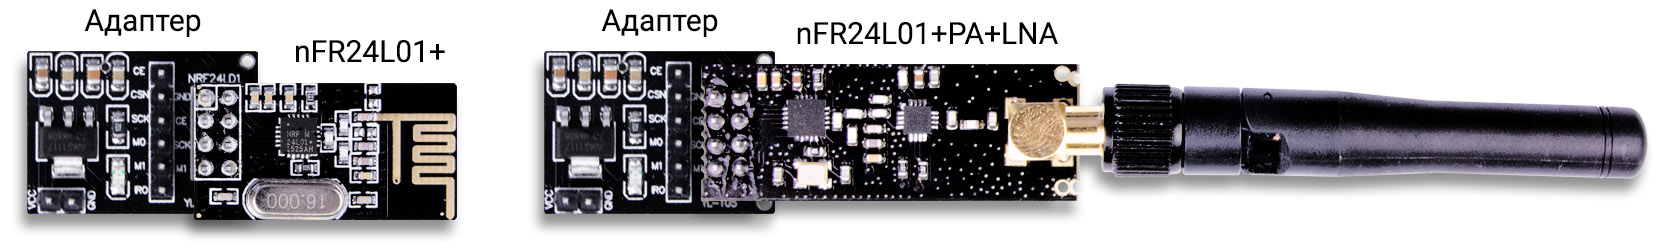 Подключение приёмопередатчика nRF24L01 к адаптеру